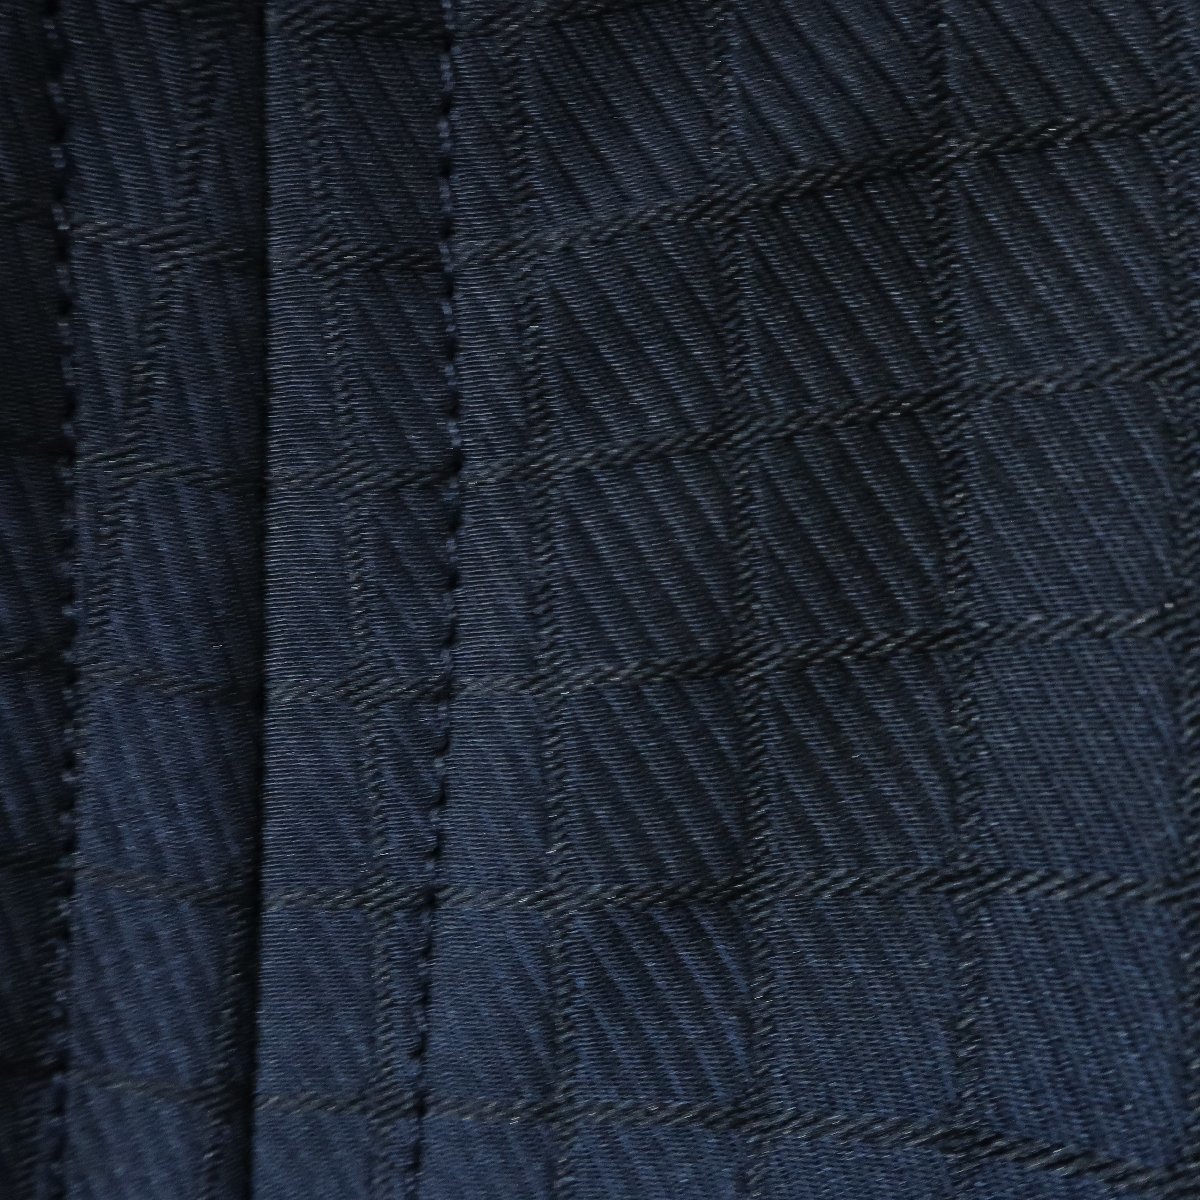 【極美品】アマカ AMACA★スカート ボックスプリーツ サイズ38 格子柄 張りのある素材 光沢あり ネイビー系 z4421_画像3